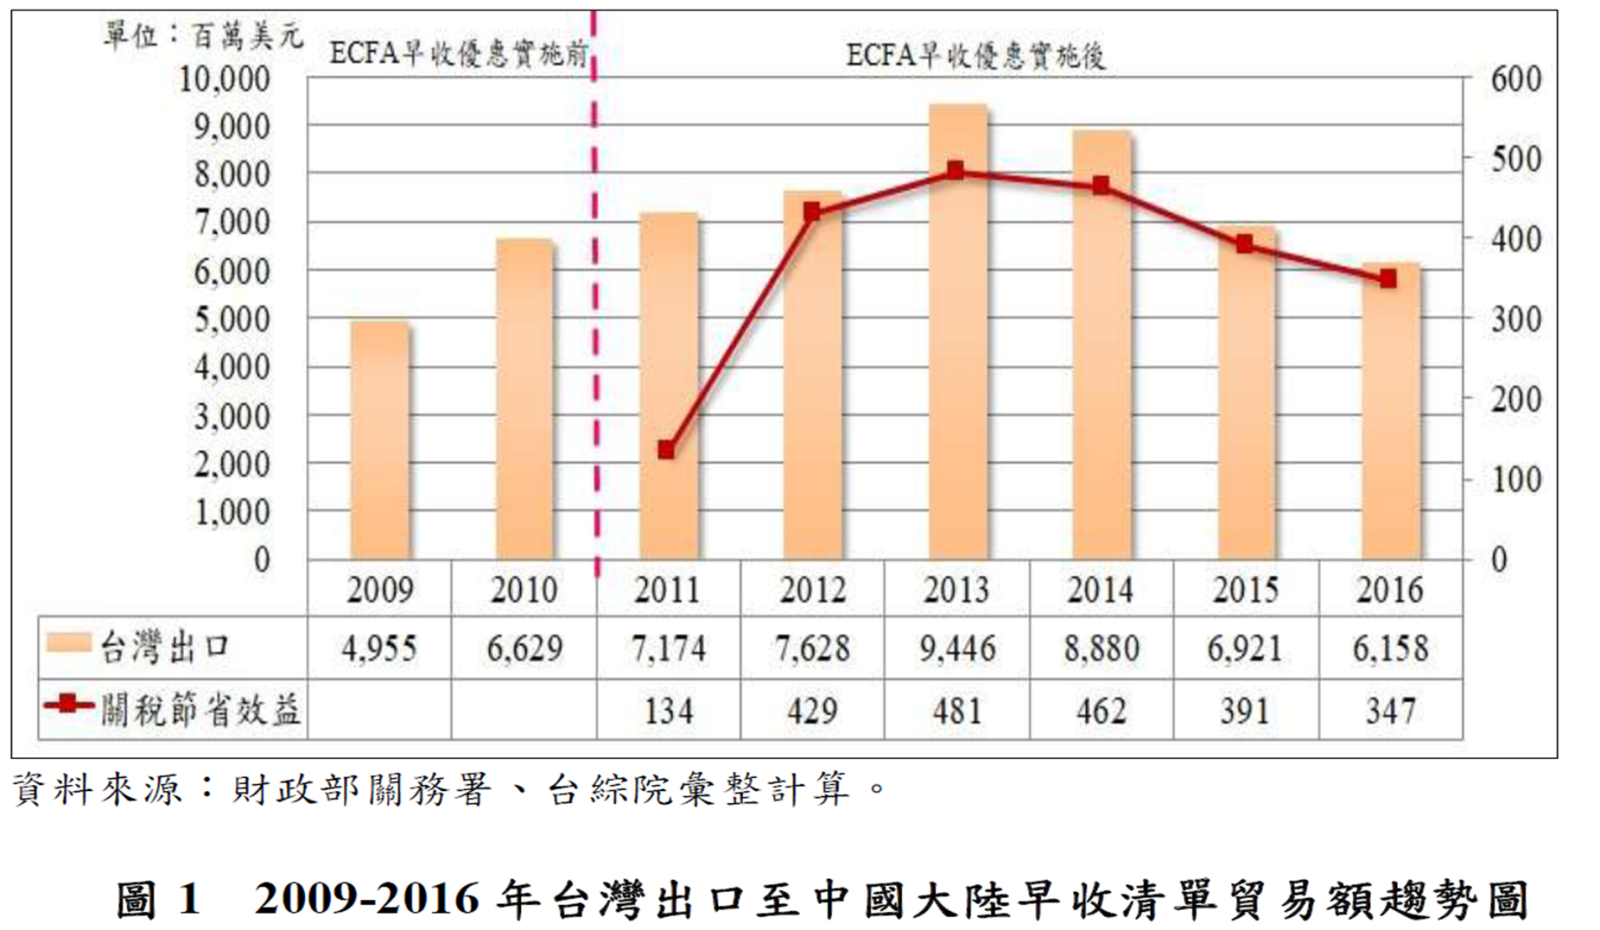 圖1 2009-2016年台灣出口至中國大陸早收清單貿易額趨勢圖(詳如上述內文)